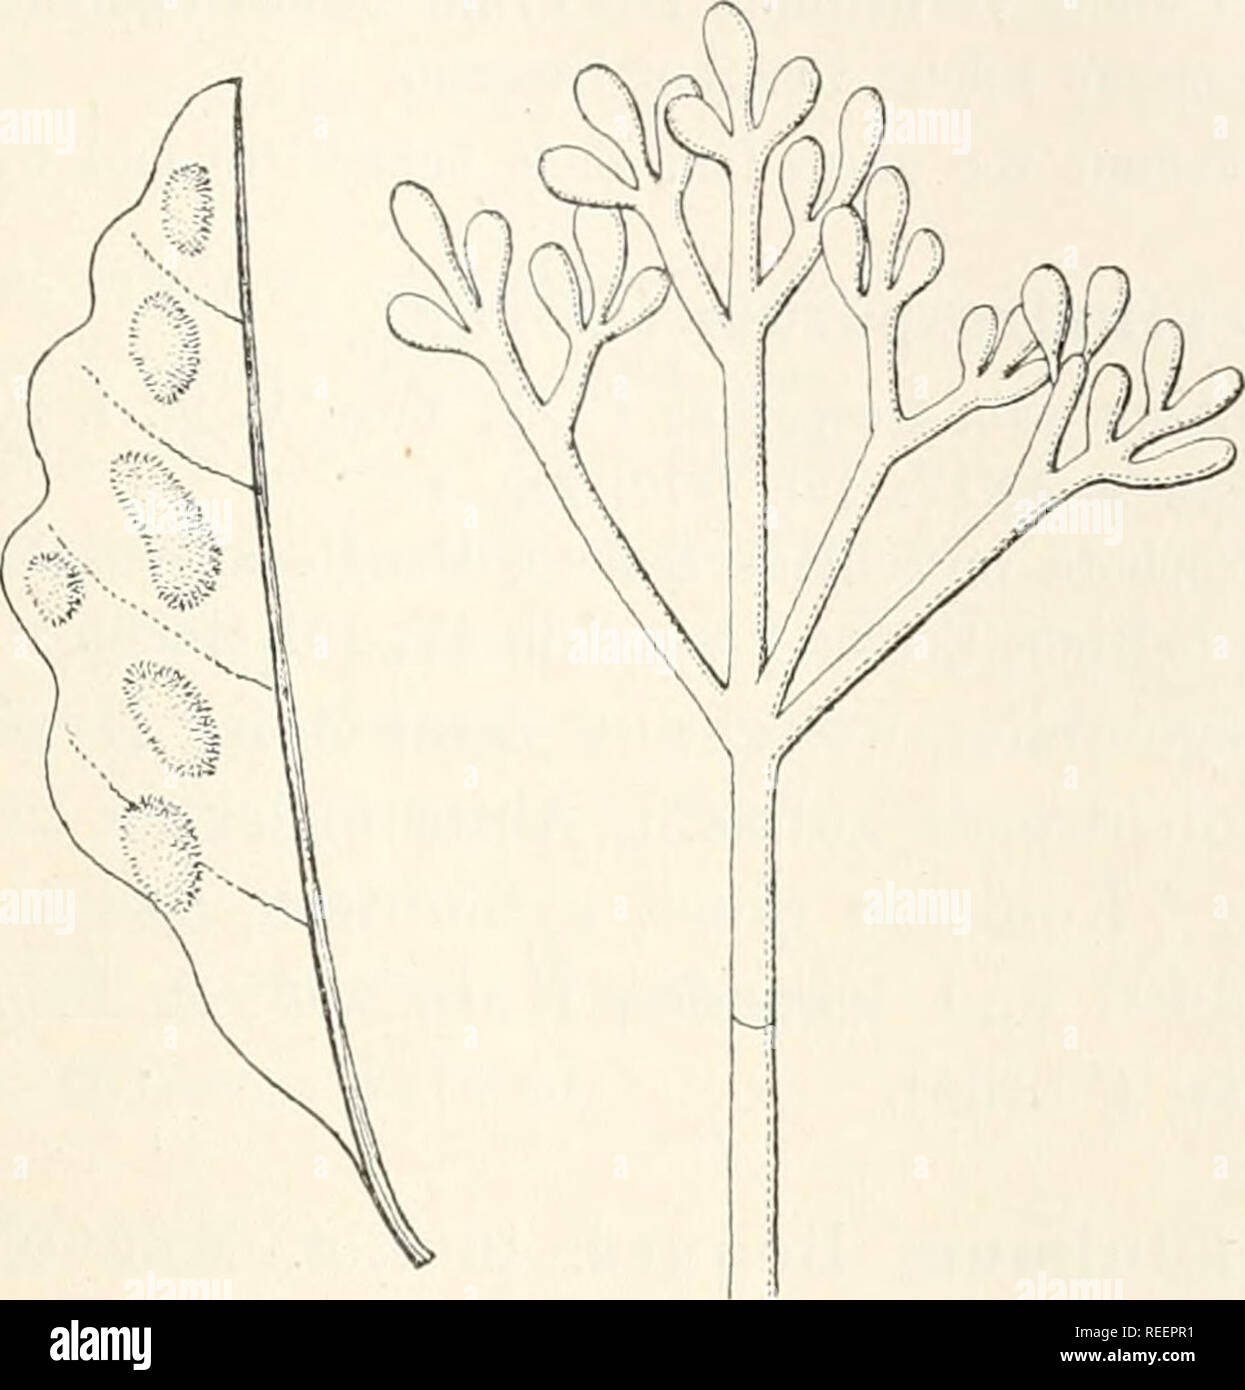 . Dr. L. Rabenhorst's Kryptogamen-Flora von Deutschland, Oesterreich und der Schweiz. Cryptogams -- Germany; Cryptogams -- Austria; Cryptogams -- Switzerland. 333. Cladobotryum Thuemenii Sacc. Blattfiecken, nat. Grösse, und Konidienträger, vergr. (Nach Saccardo.) Zweifelhafte Art. 698. C. varium Nees Syst. p. 56 (1817), Fig. 54. — Sacc. Syll. IV, 160. Syn. Botrytis varisperma Link in Magaz. Ges. Nat. Fr. Berlin VII, 36 (1816). Dactylium varium Fries Syst. Myc. III, 414 (1832). Rasen spinnewebartig-, locker verflochten, zuerst weiss, dann blass rosa. Konidienträger unregelmässig verzweigt. Koni Stock Photo